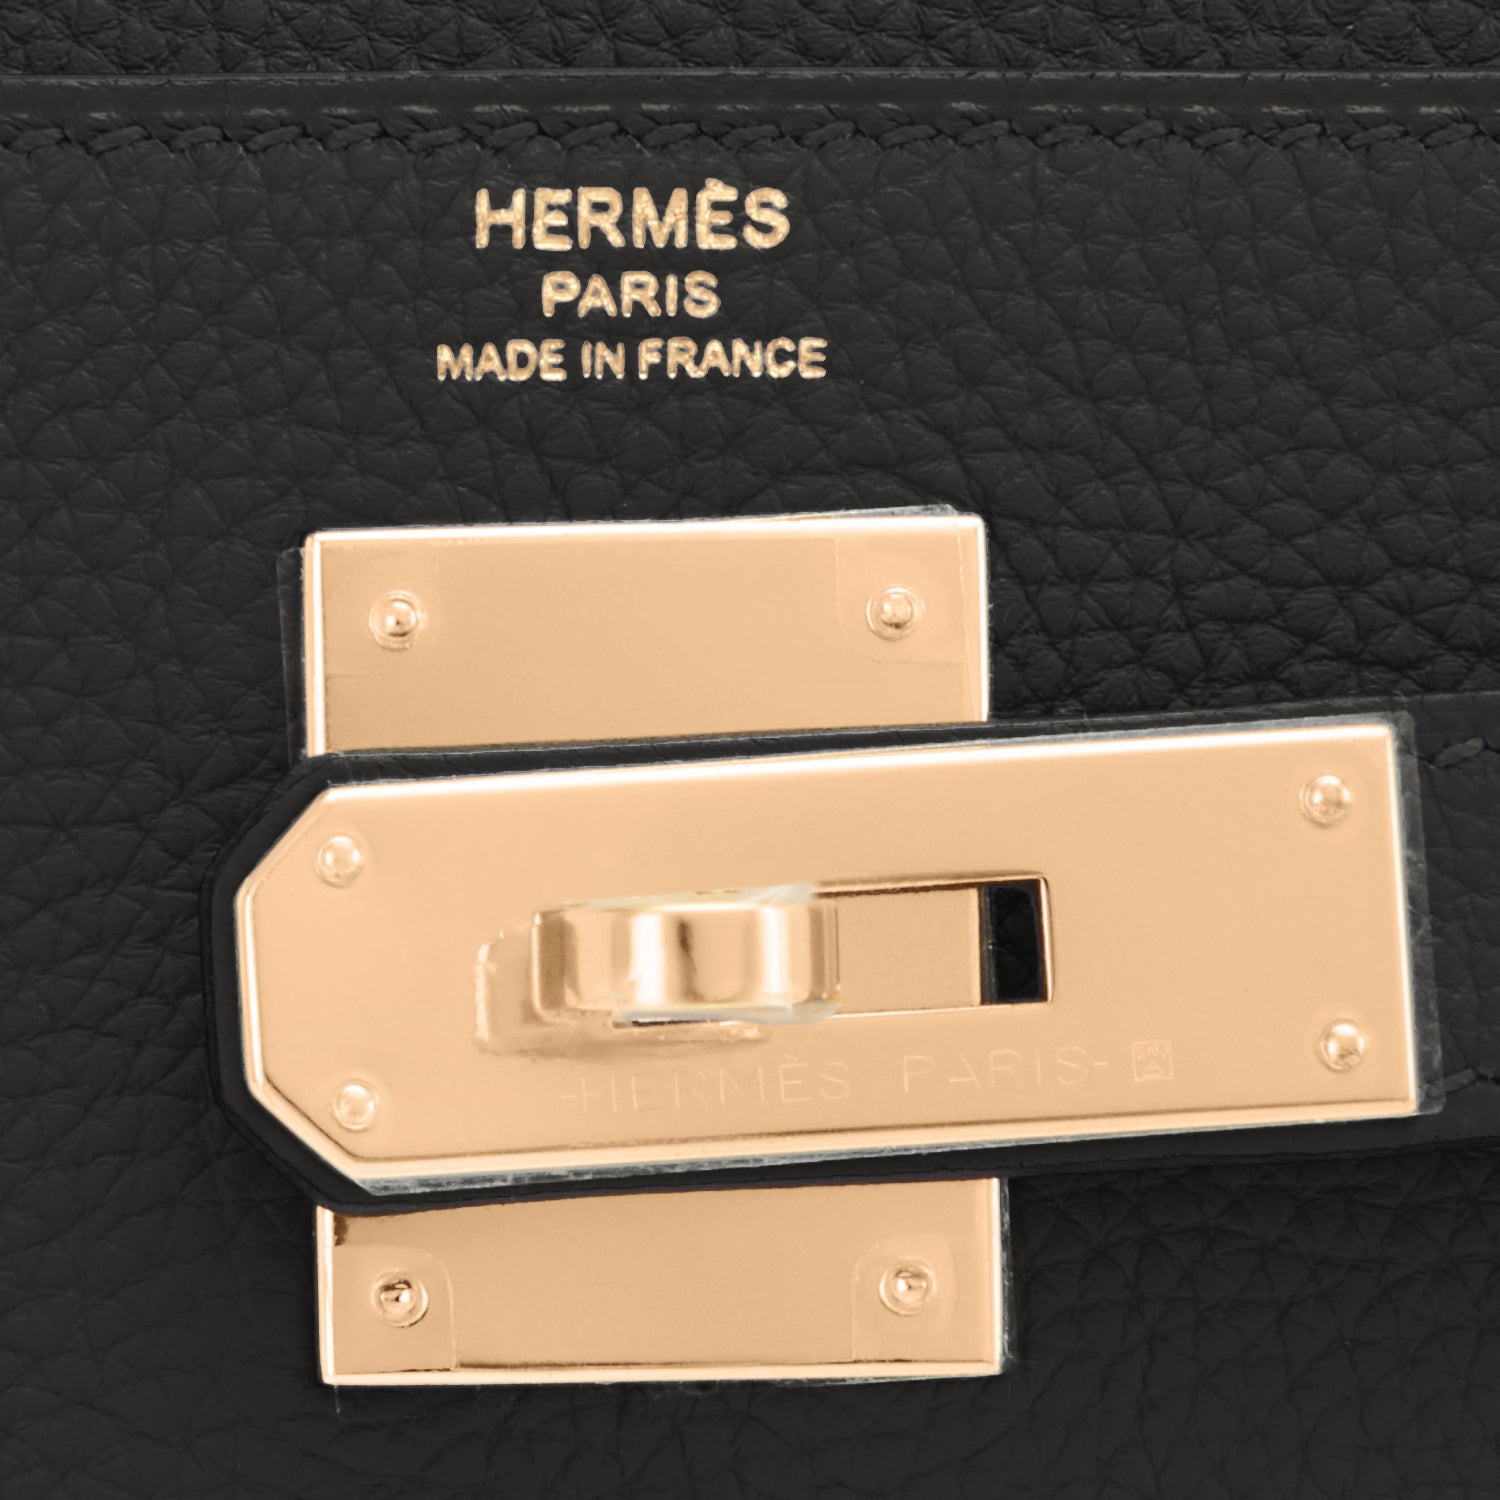 Hermes Kelly 20cm/25cm/28cm/32cm Togo Calfskin Bag